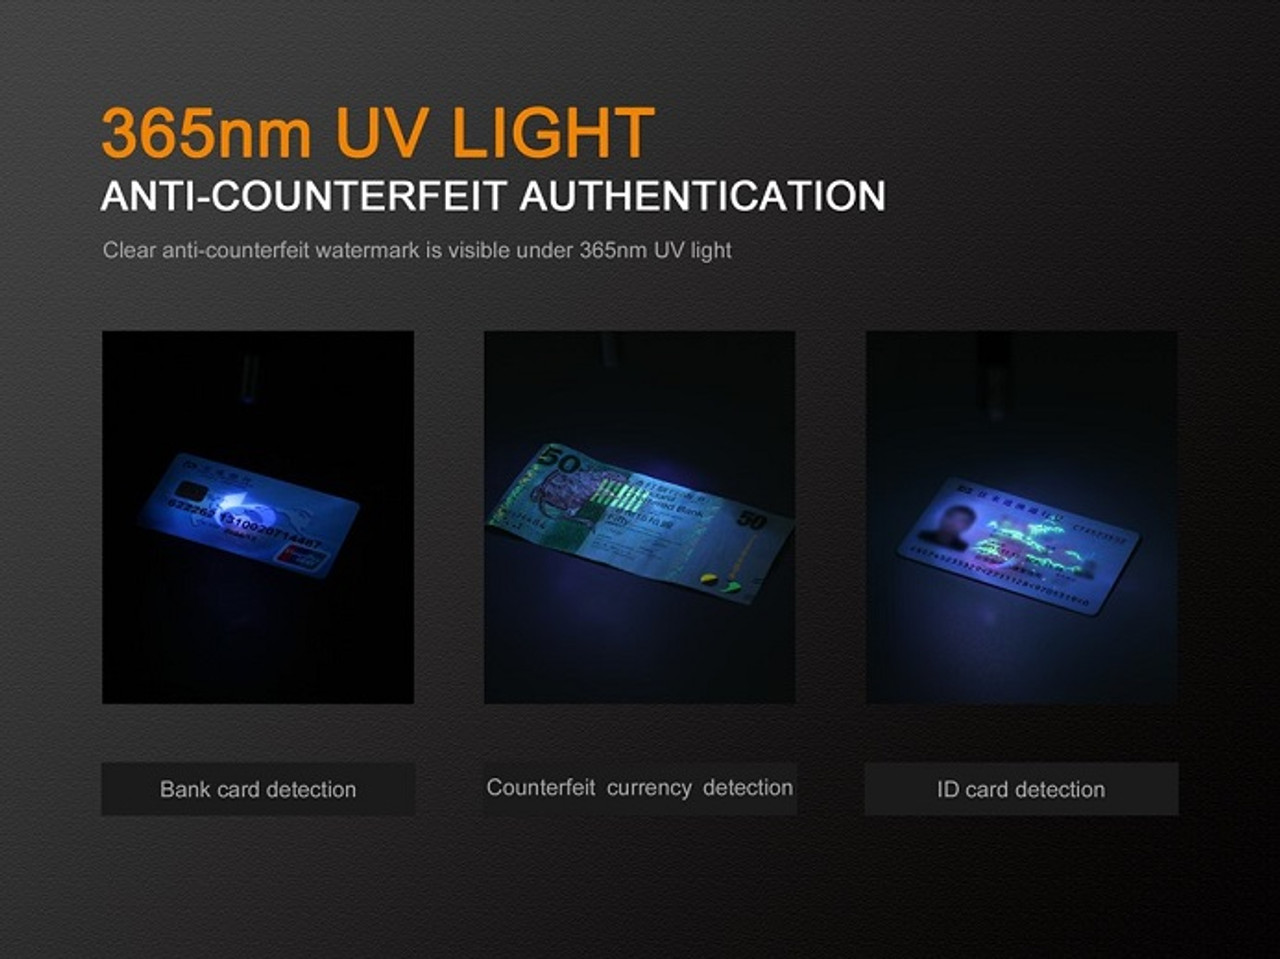 LD02 V2.0 - Fenix 70 Lumen Penlight + UV light